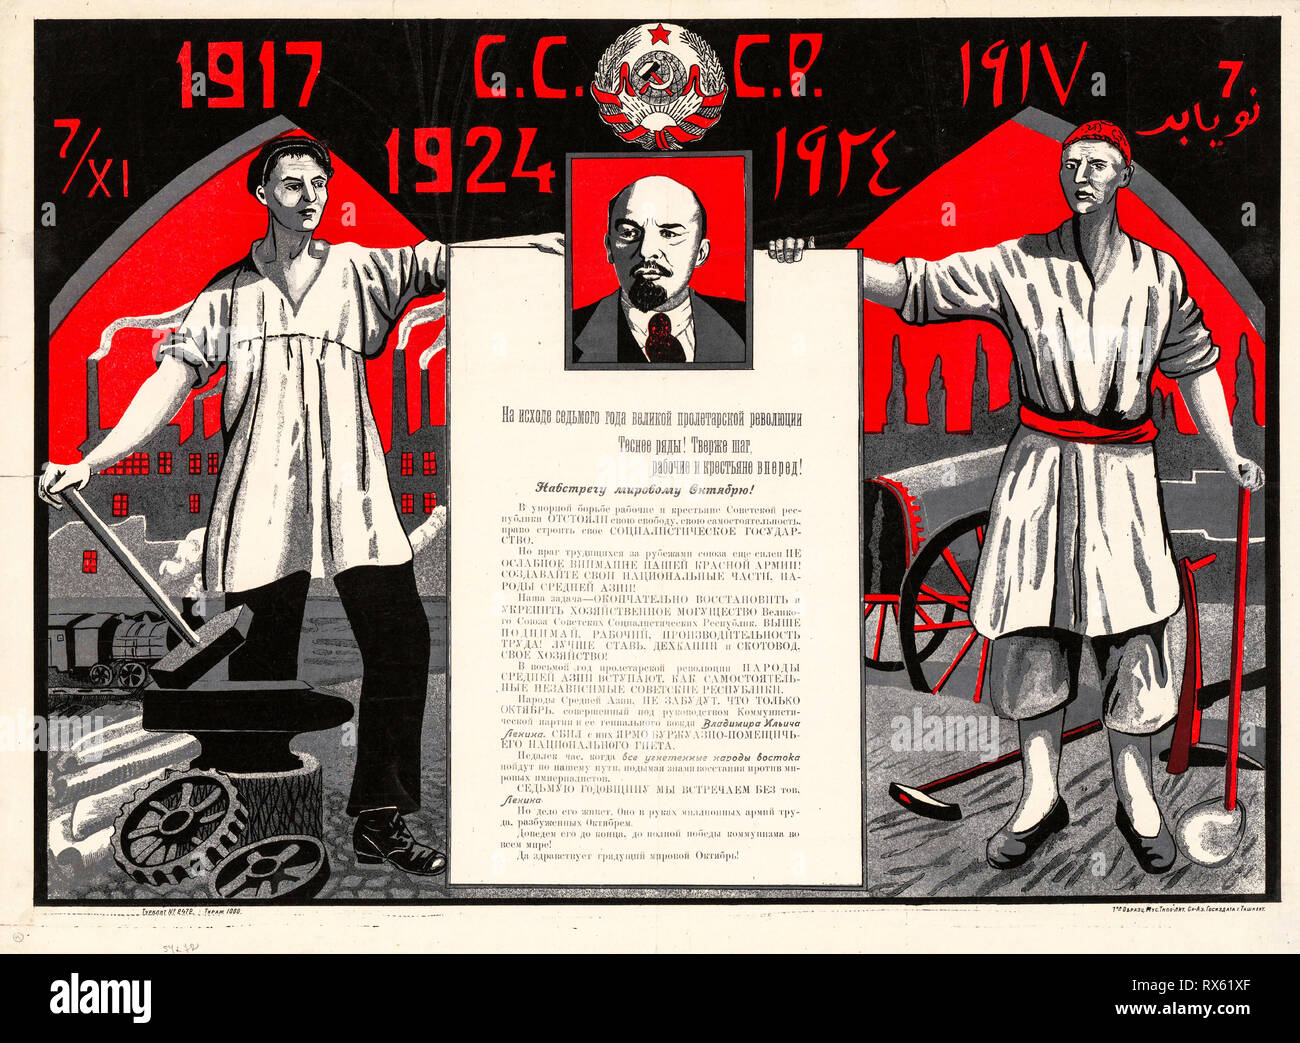 Affiche de la Révolution russe, 1917-1924, septième année, affiche de la propagande soviétique, Lénine, 1924 Banque D'Images